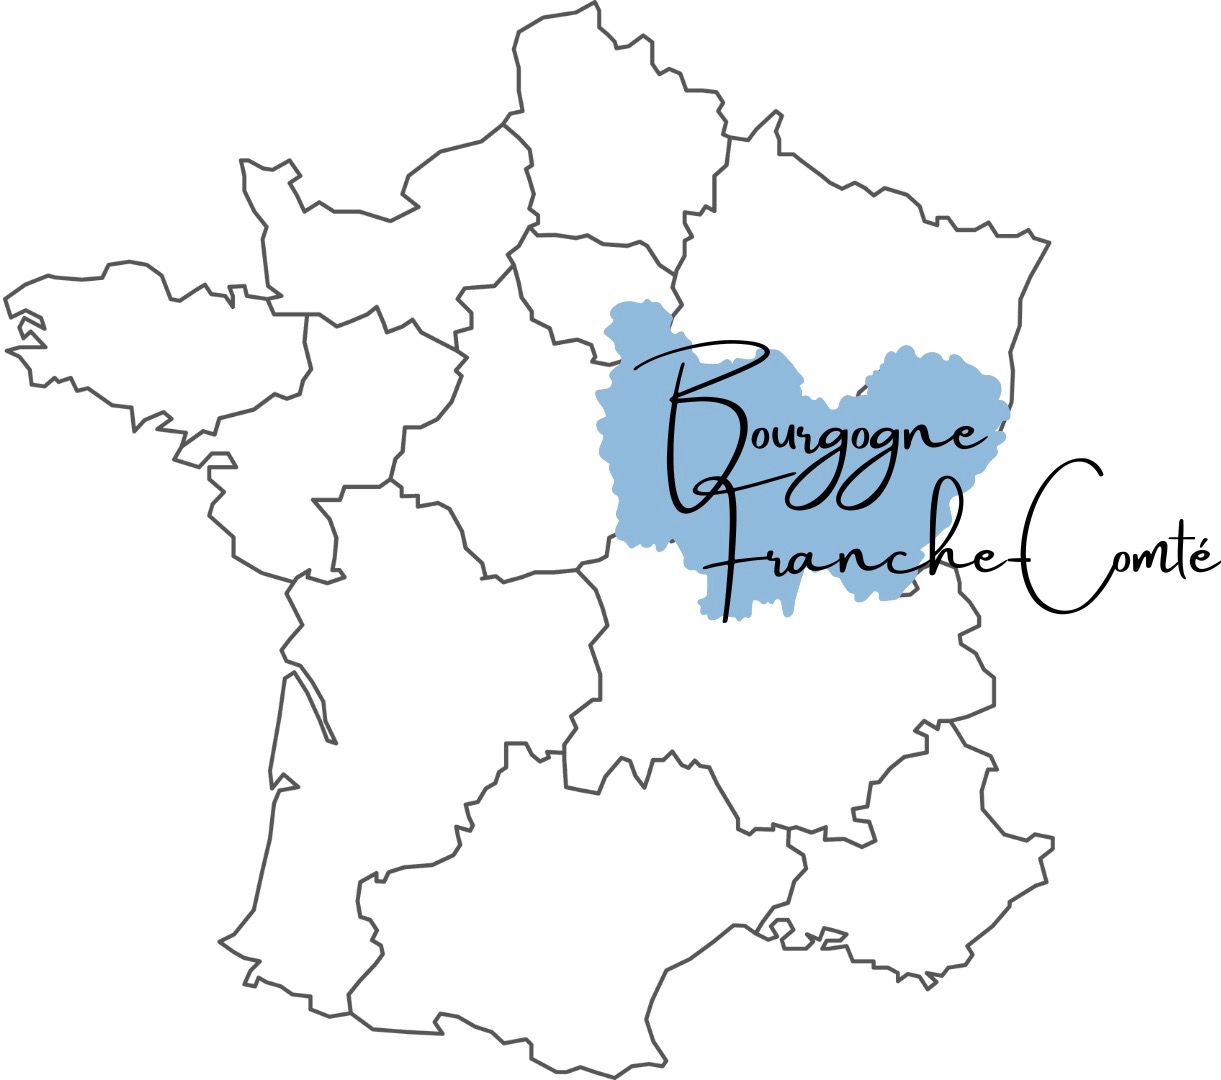 Visiter la région Bourgogne Franche-comté